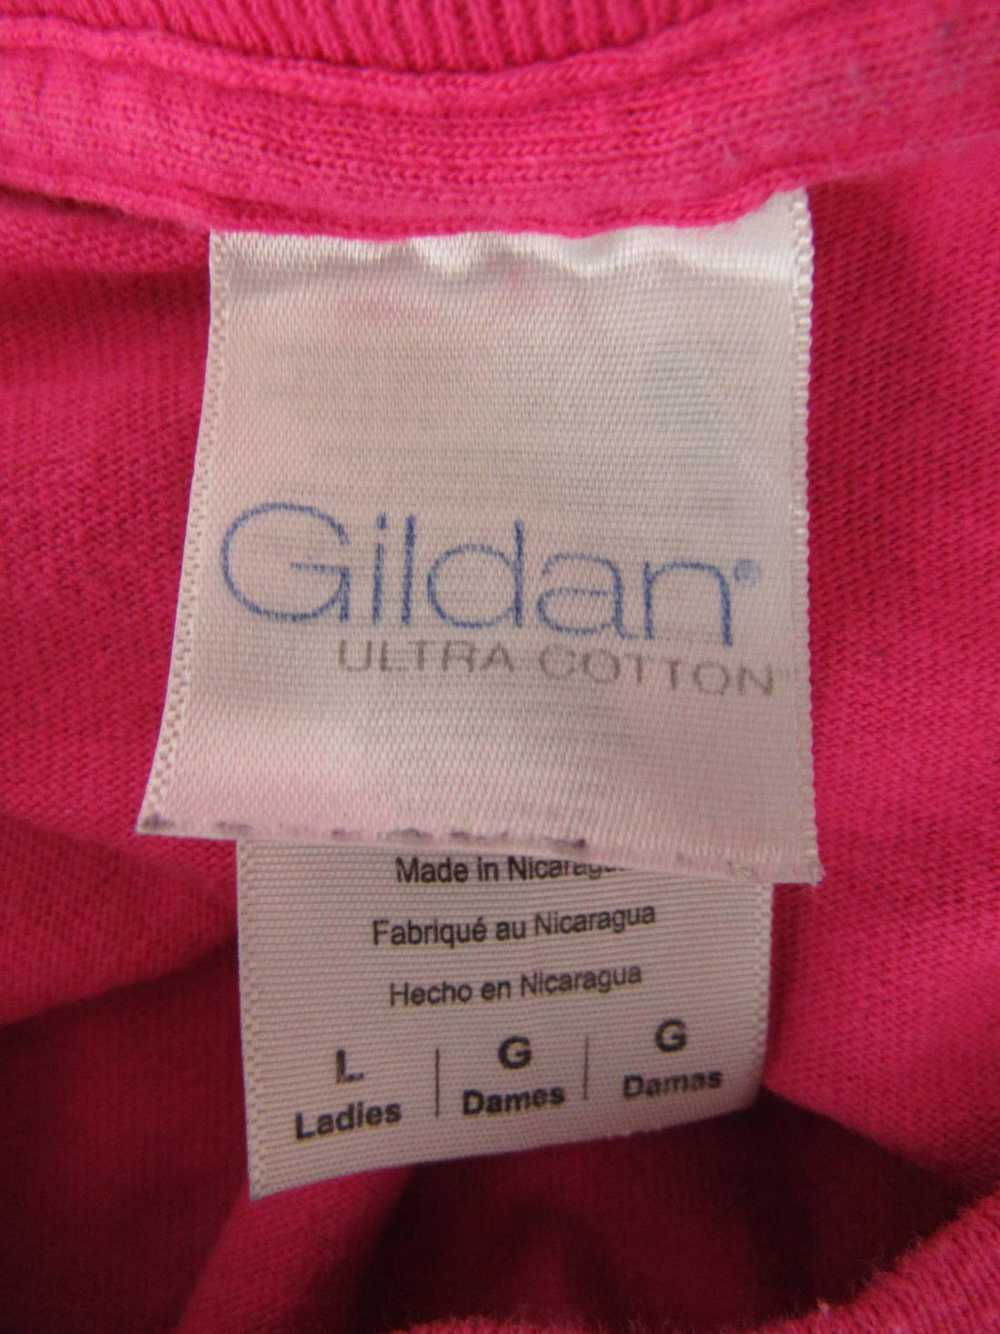 Gildan T-Shirt Top - image 3